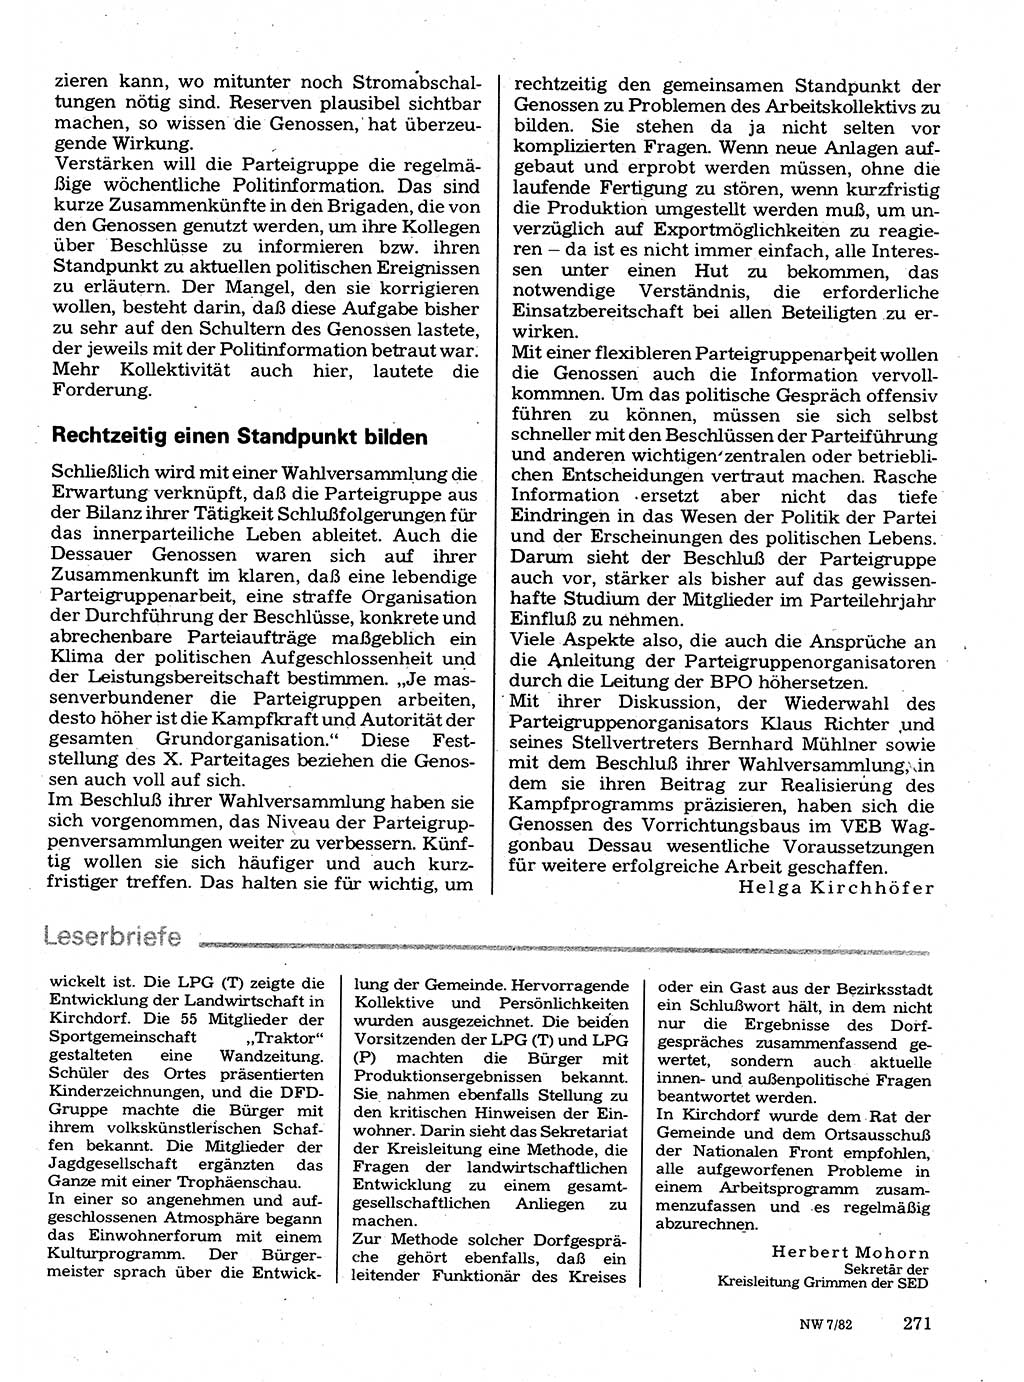 Neuer Weg (NW), Organ des Zentralkomitees (ZK) der SED (Sozialistische Einheitspartei Deutschlands) für Fragen des Parteilebens, 37. Jahrgang [Deutsche Demokratische Republik (DDR)] 1982, Seite 271 (NW ZK SED DDR 1982, S. 271)